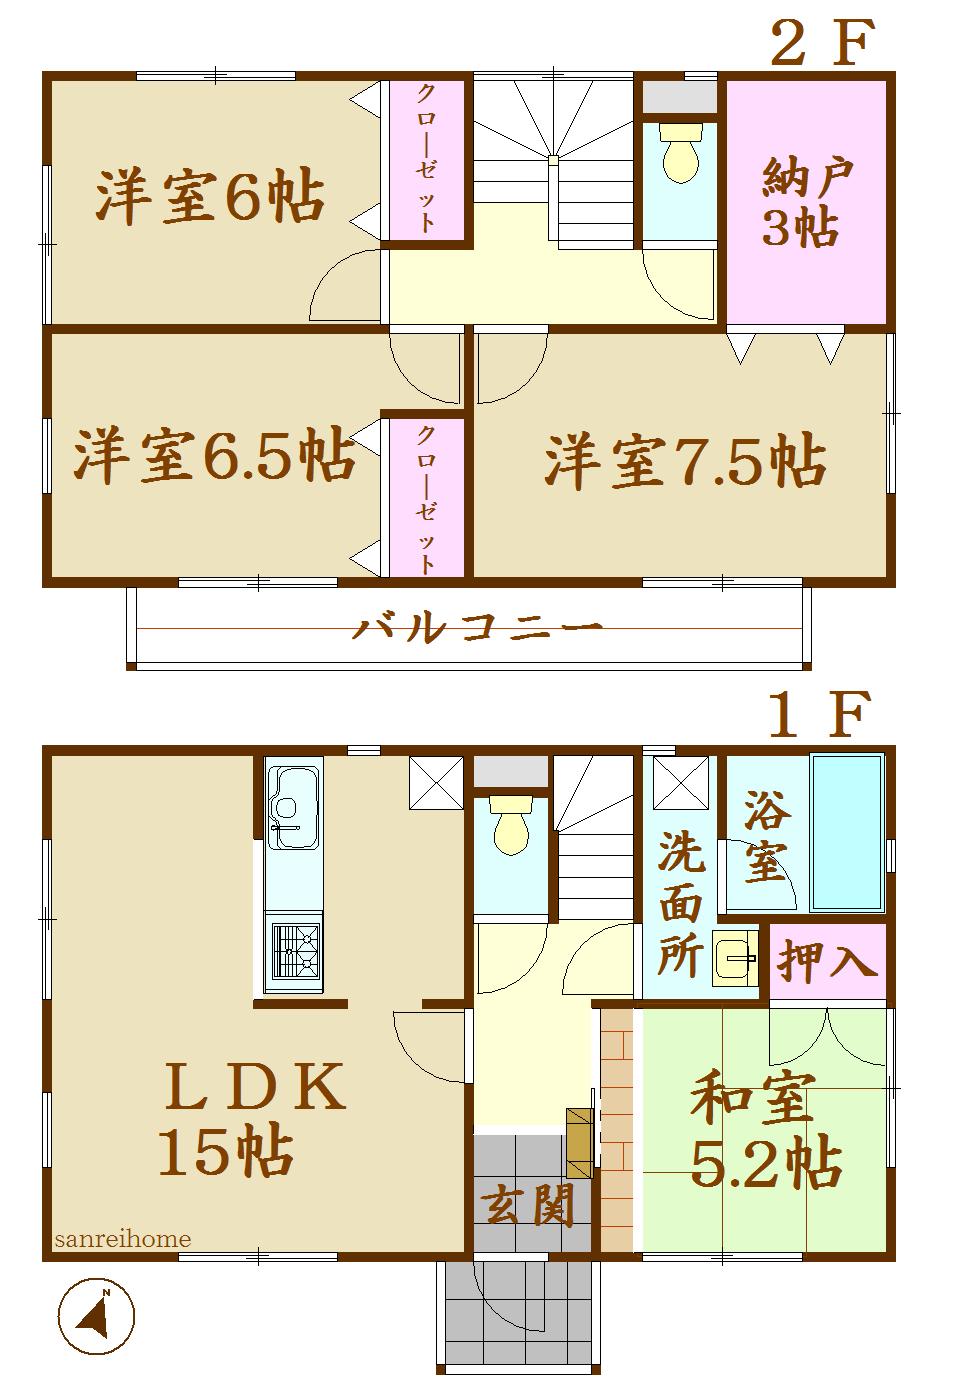 Floor plan. 21.9 million yen, 4LDK, Land area 138.98 sq m , Building area 96.39 sq m